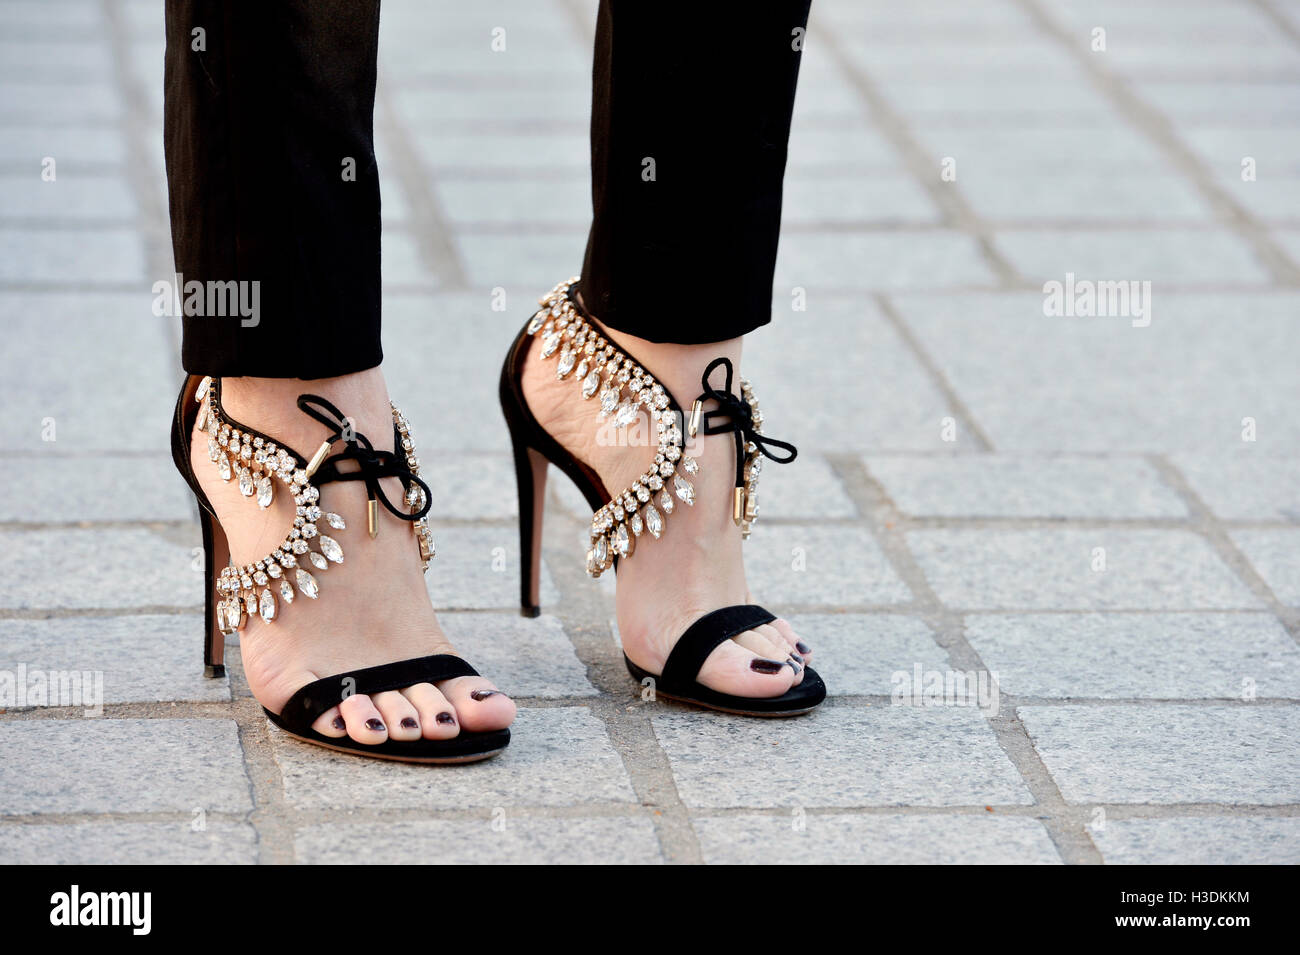 Louis vuitton high heels shoes fotografías e imágenes de alta resolución -  Alamy